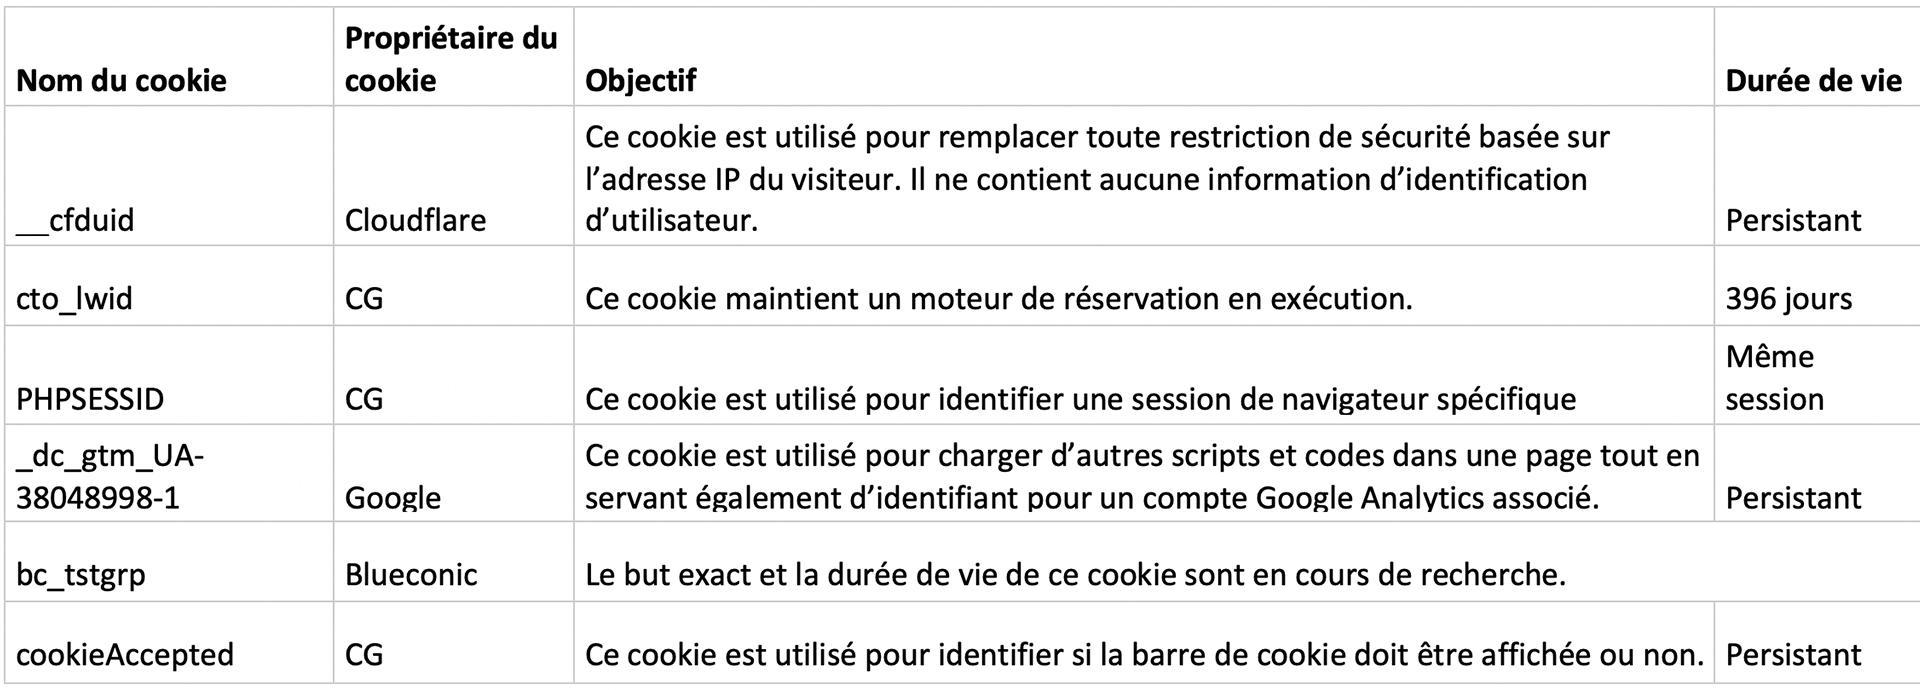 Rechargefr cookie 1